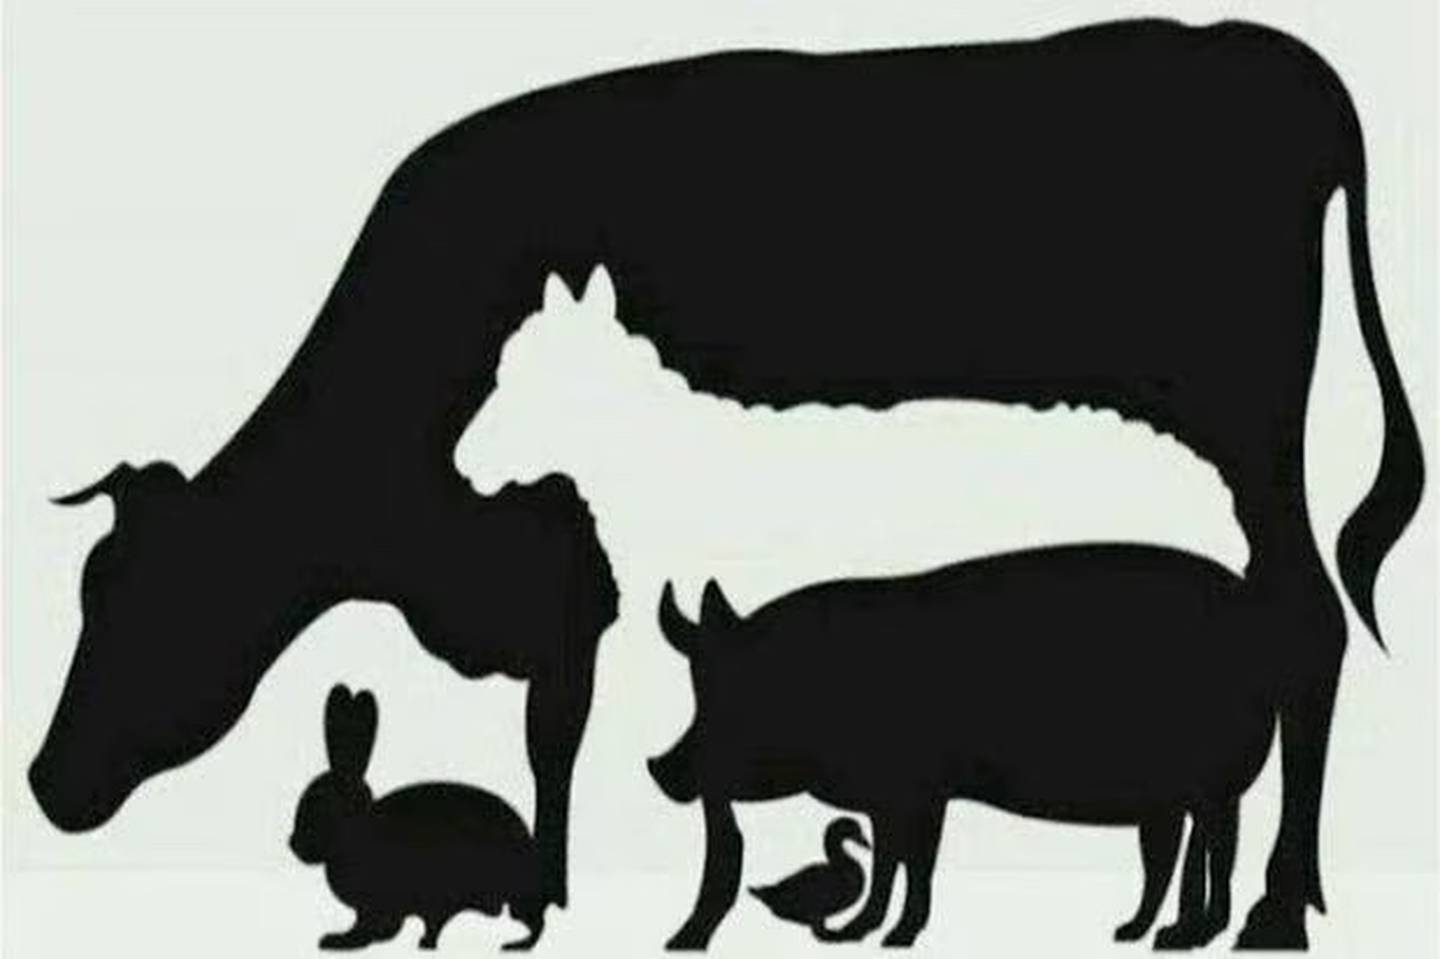 ¿Cuántos animales ves?